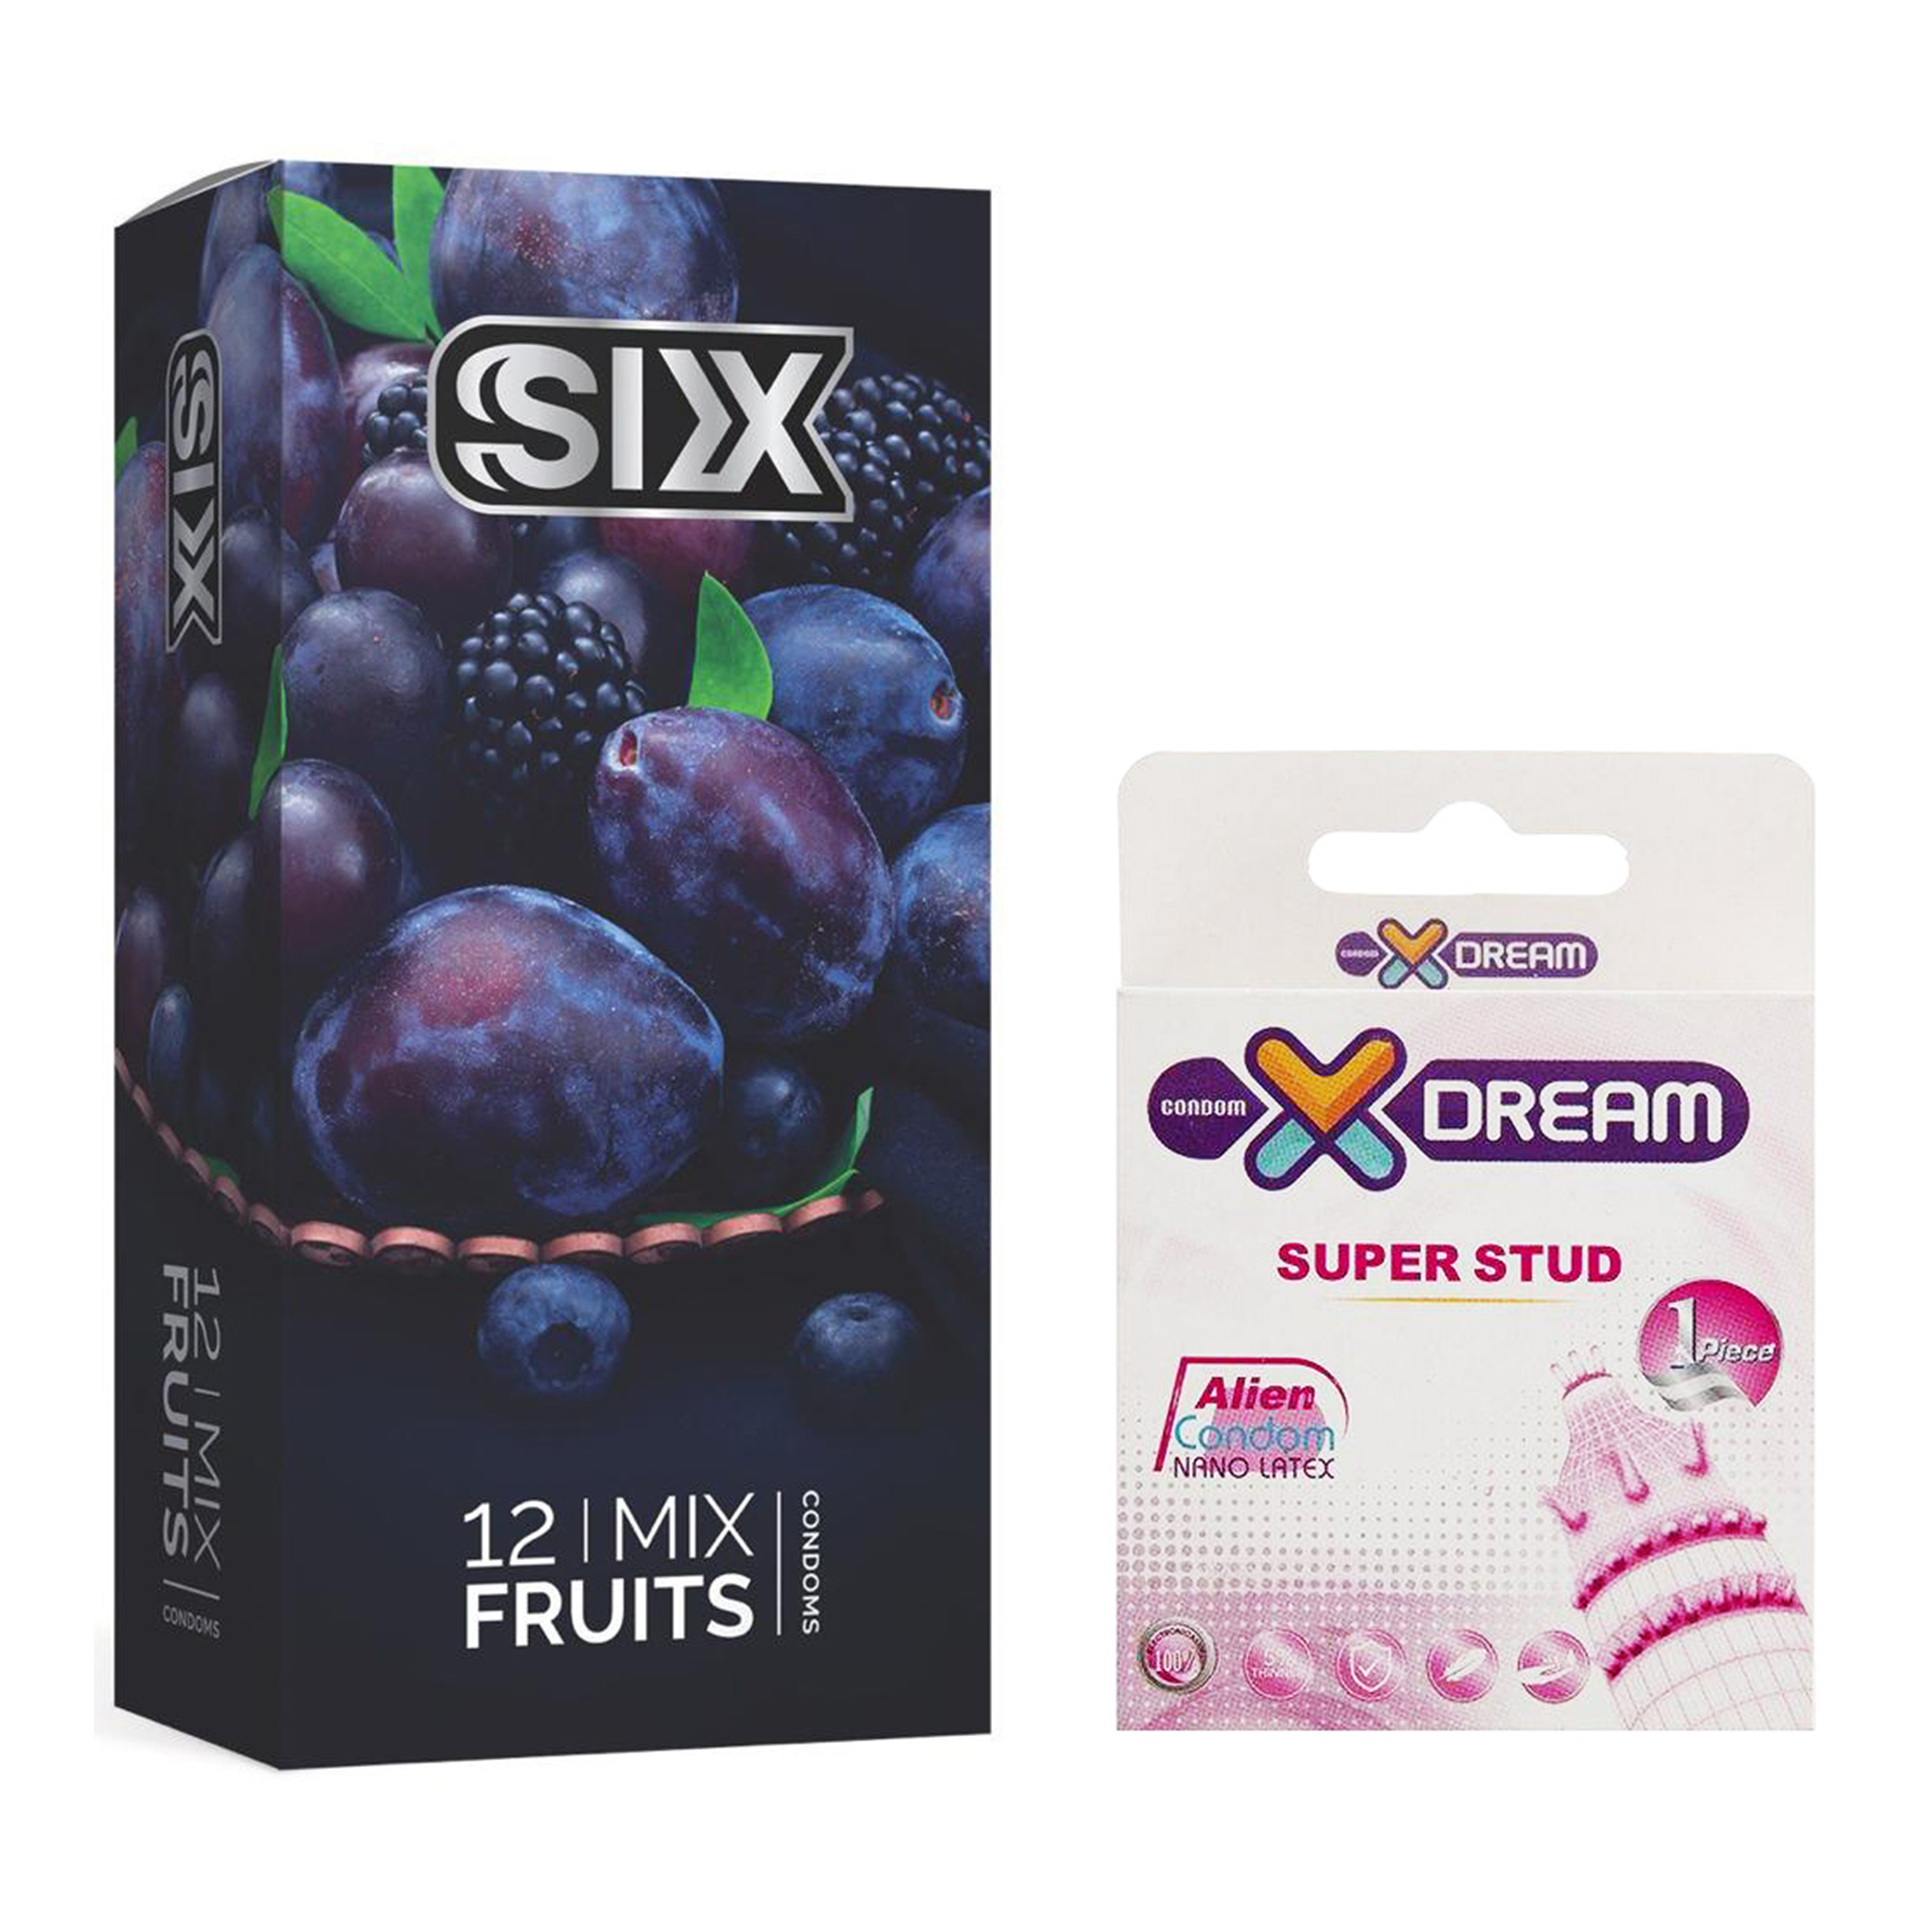 کاندوم سیکس مدل Mix Fruits بسته 12 عددی به همراه کاندوم ایکس دریم مدل Super Stud